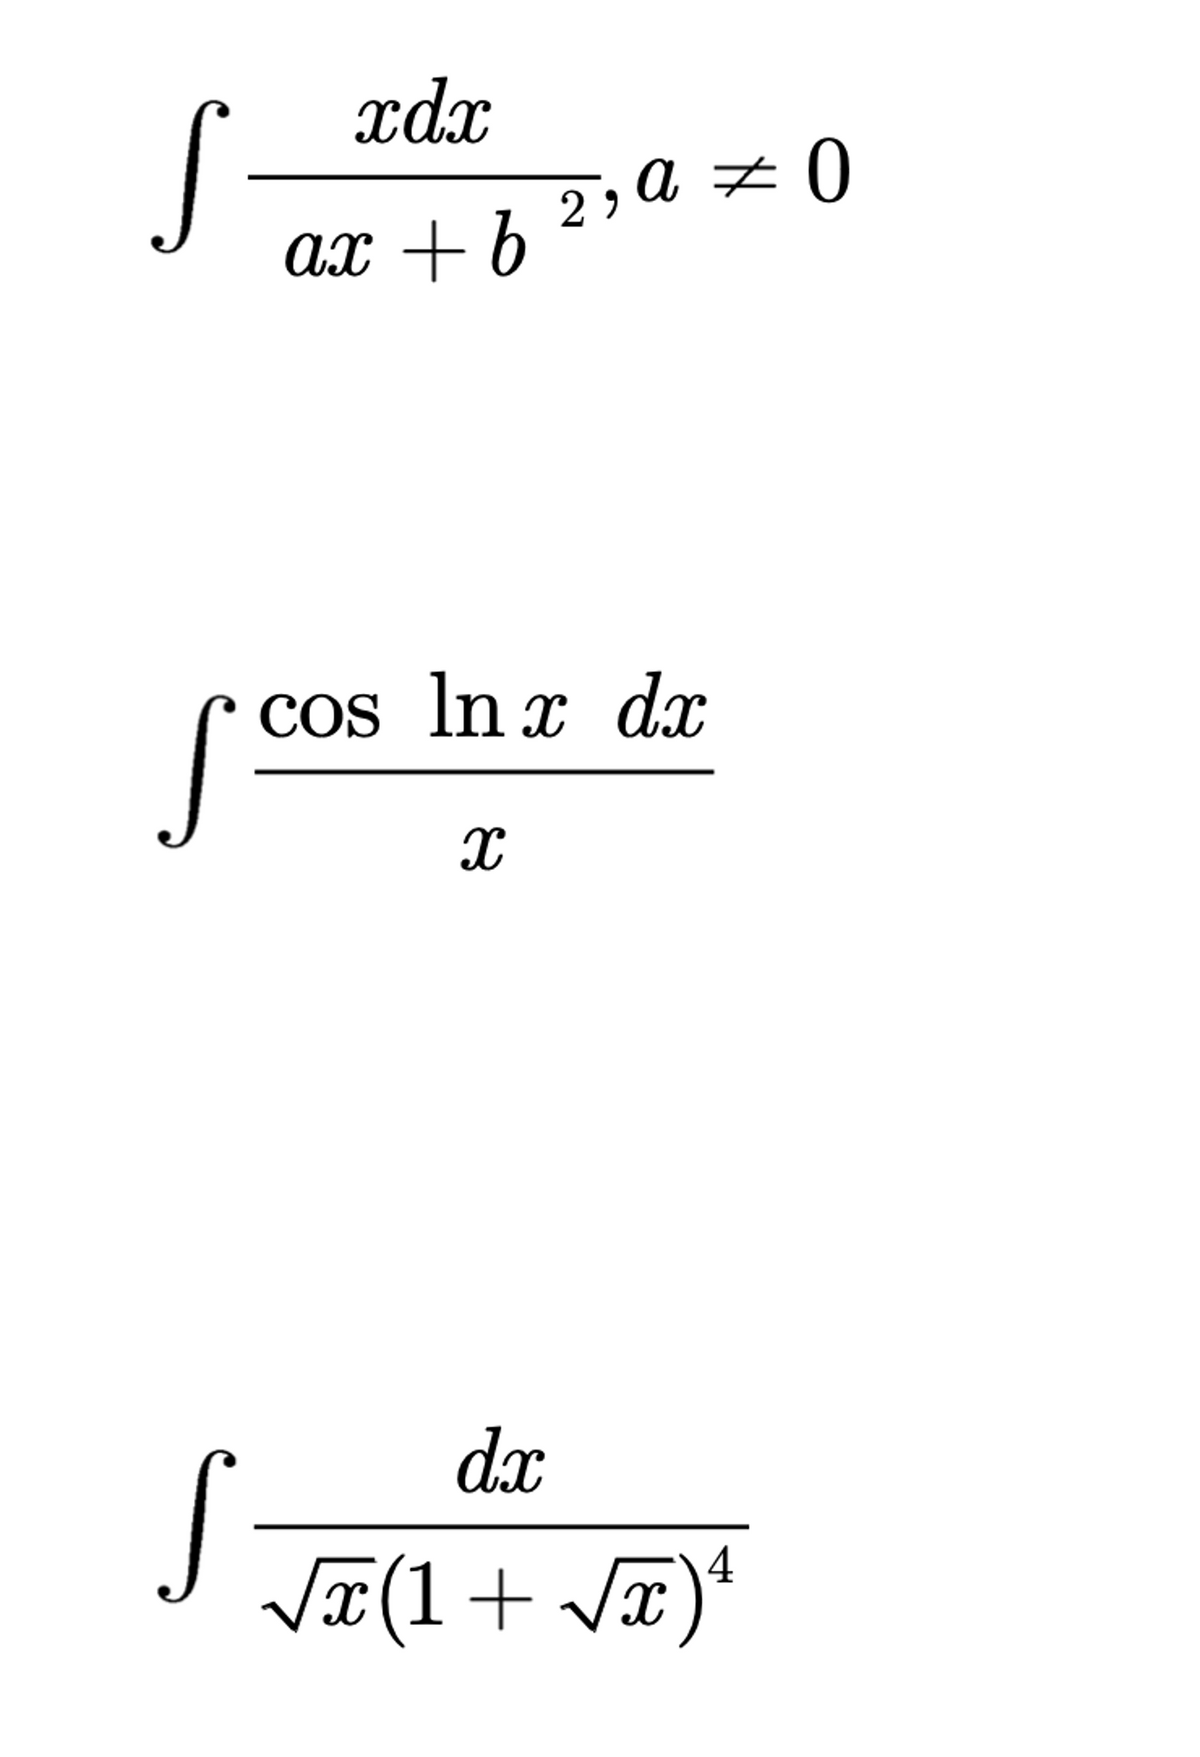 xdx
ax + b
cos ln x dr
X
dx
√x(1+√x)¹
S
S
29
0 = 0